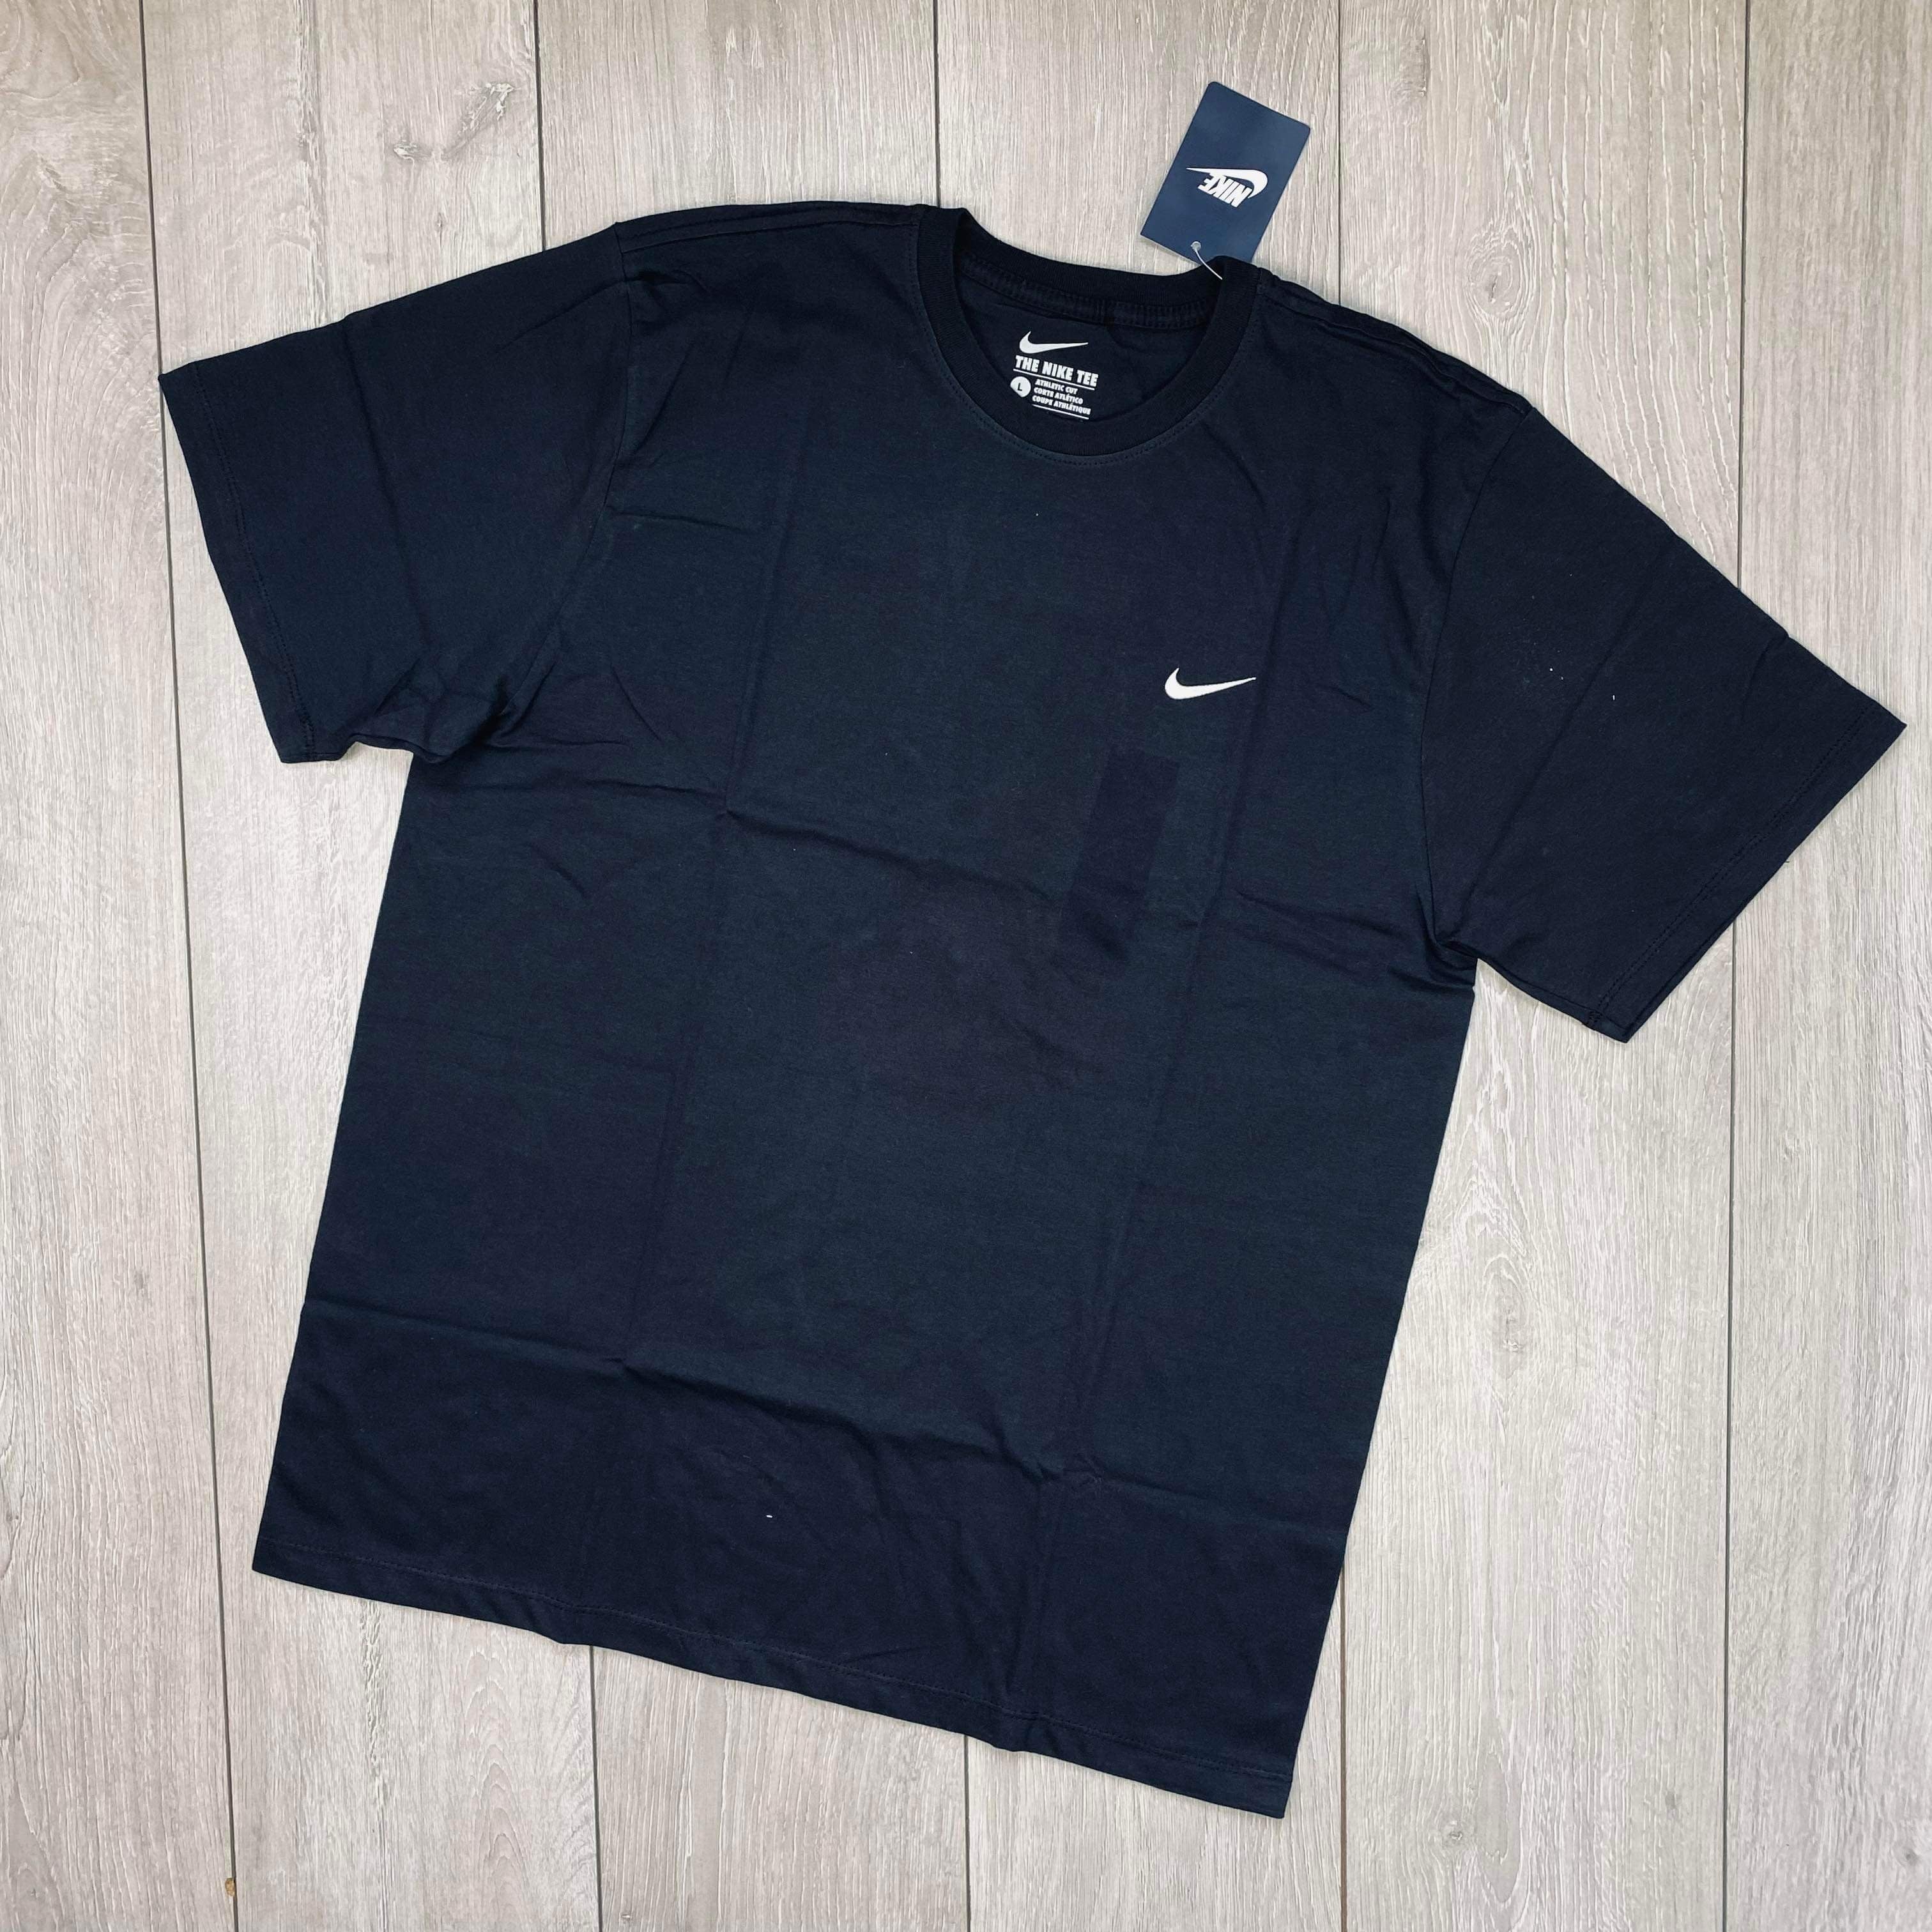 Nike Swoosh T-Shirt - Black